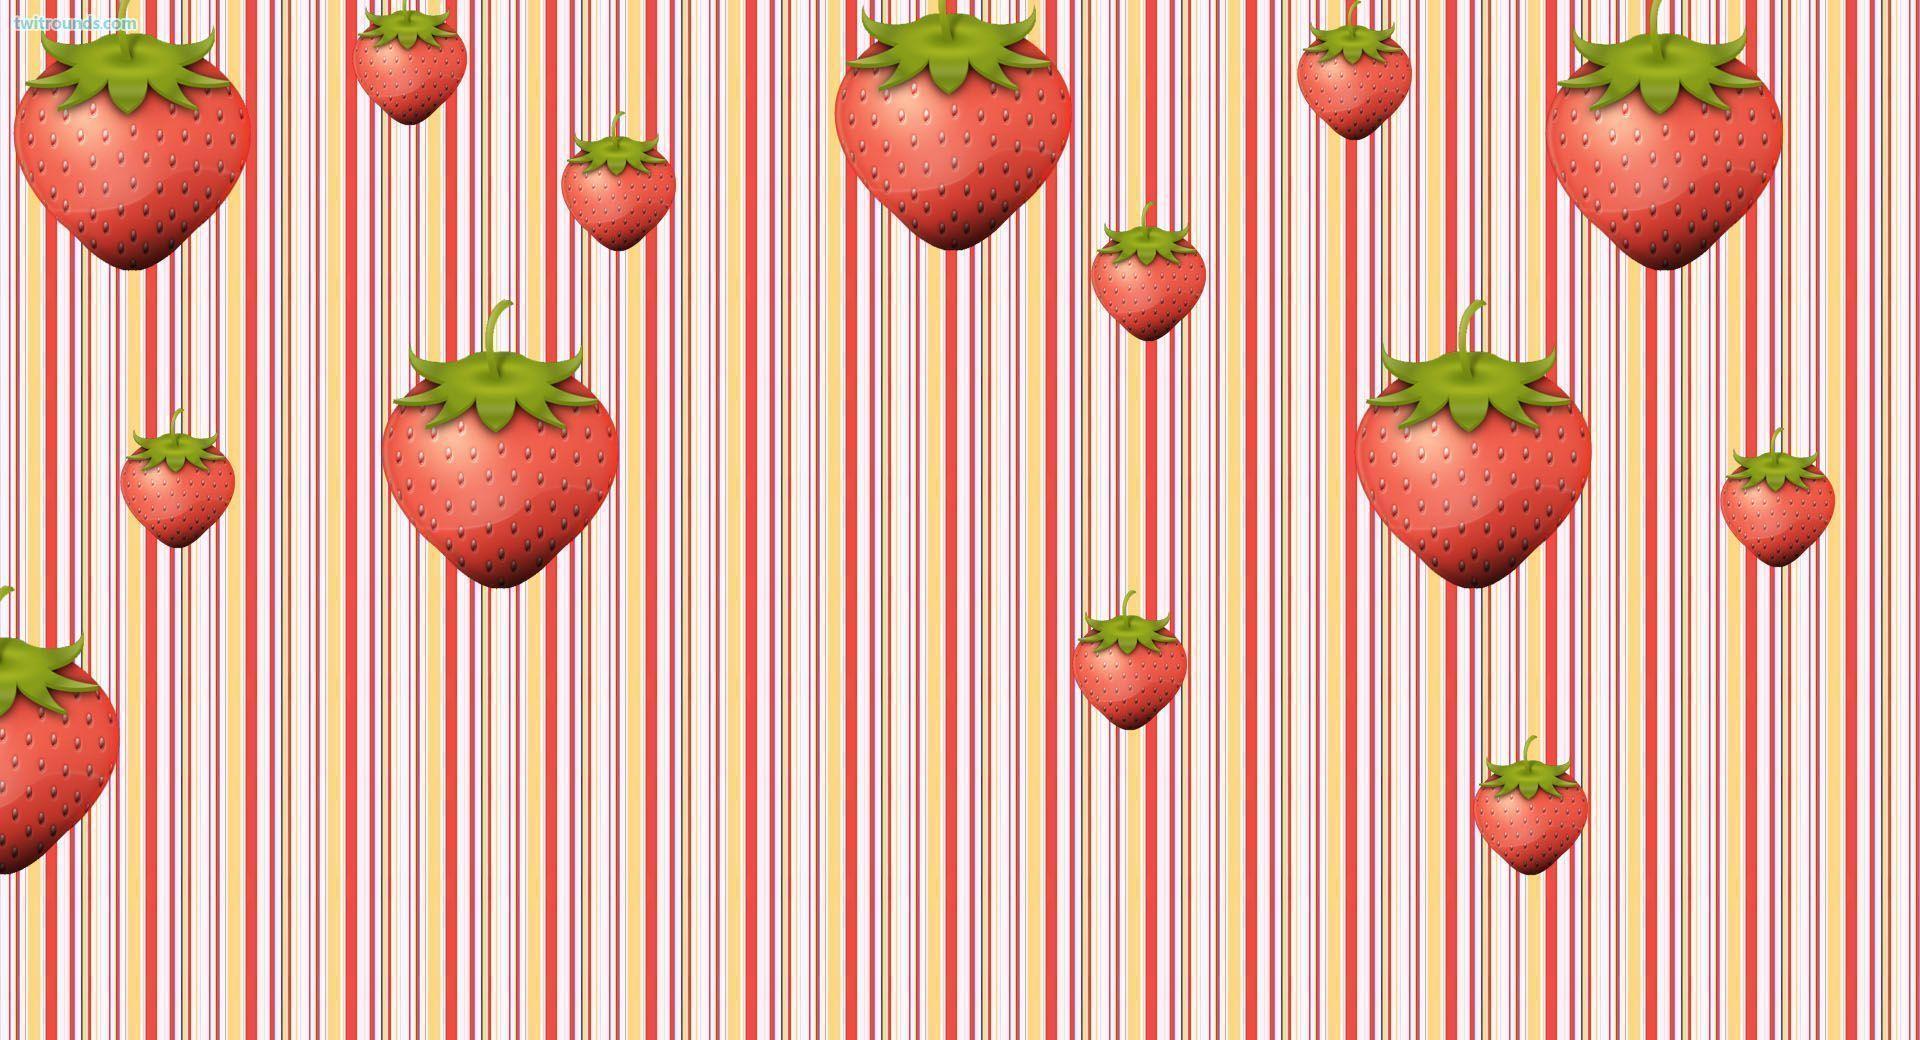 Wallpaper Strawberry Shortcake The HD 1920x1080 taken